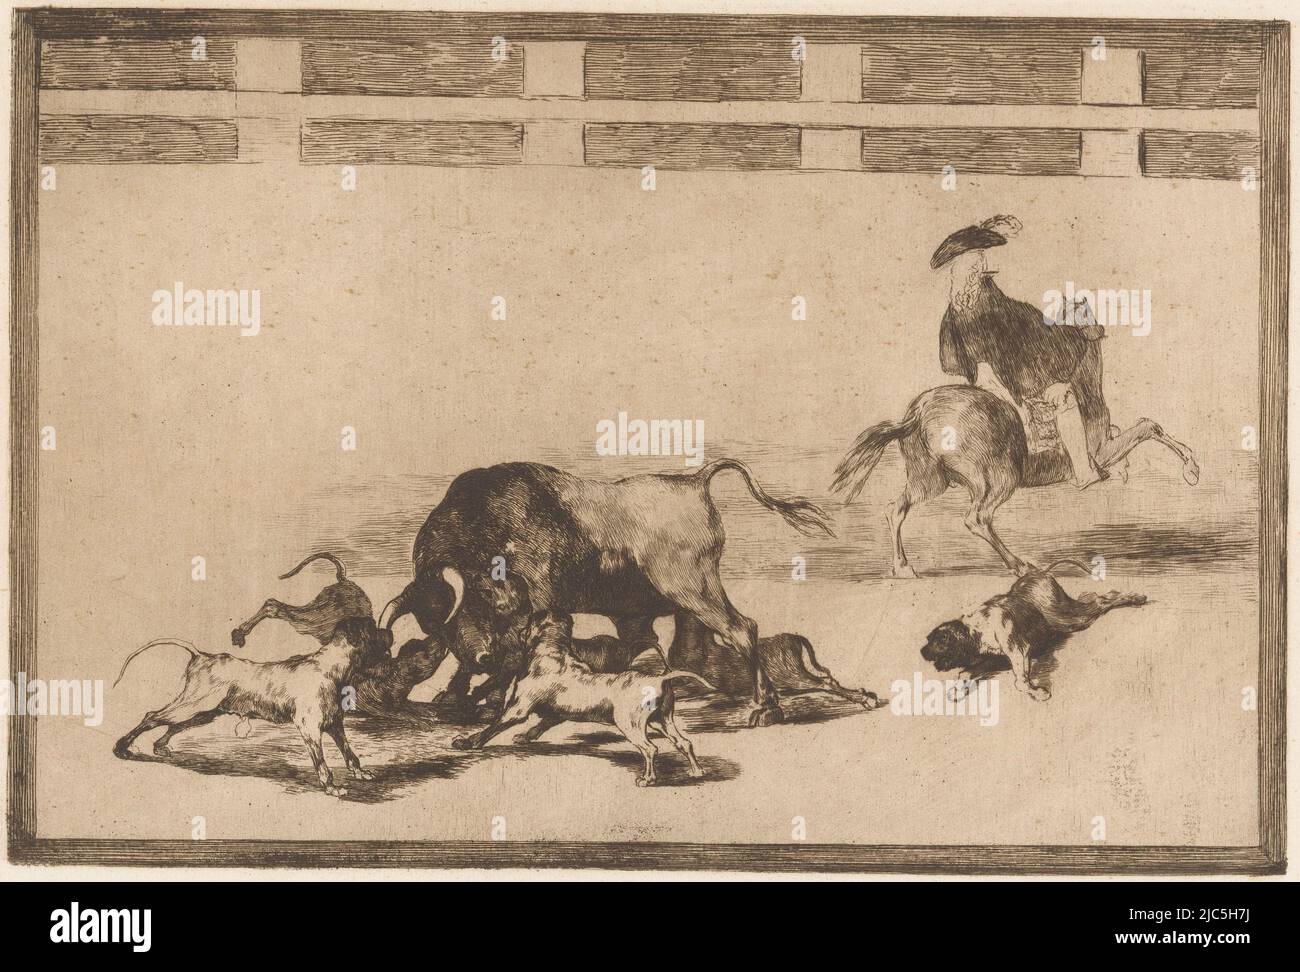 Fünf Hunde greifen einen Stier in einer Arena an. Ein Hund liegt verwundet auf dem Boden. Rechts ein Mann auf dem Pferderücken, von hinten gesehen. Nummeriert oben rechts: 25., Bulle von Hunden angegriffen Echan perros al toro Bullfighting (Serientitel) La Taureaumachie (Serientitel) La Tauromaquia (Serientitel), Druckerei: Francisco de Goya, Verlag: Eugène Loizelet, Druckerei: Spanien, Verlag: Paris, 1876, Papier, Radierung, H 246 mm × B 353 mm Stockfoto